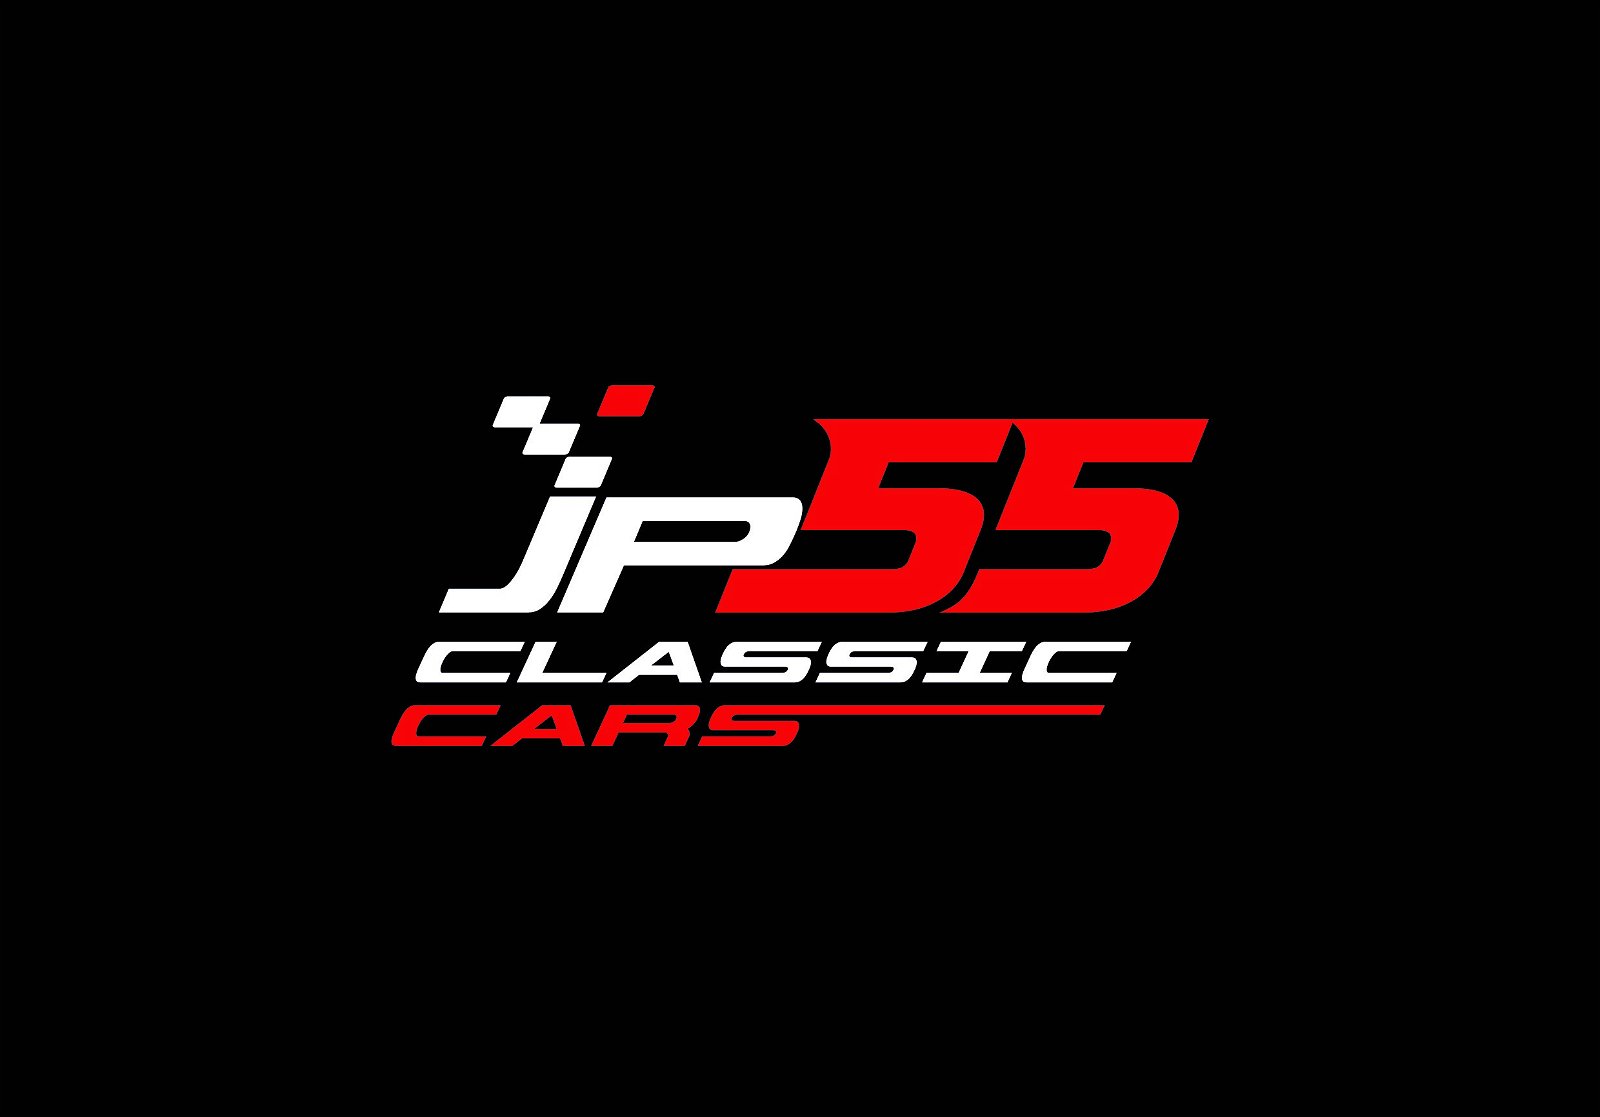 JP55 Classic Cars